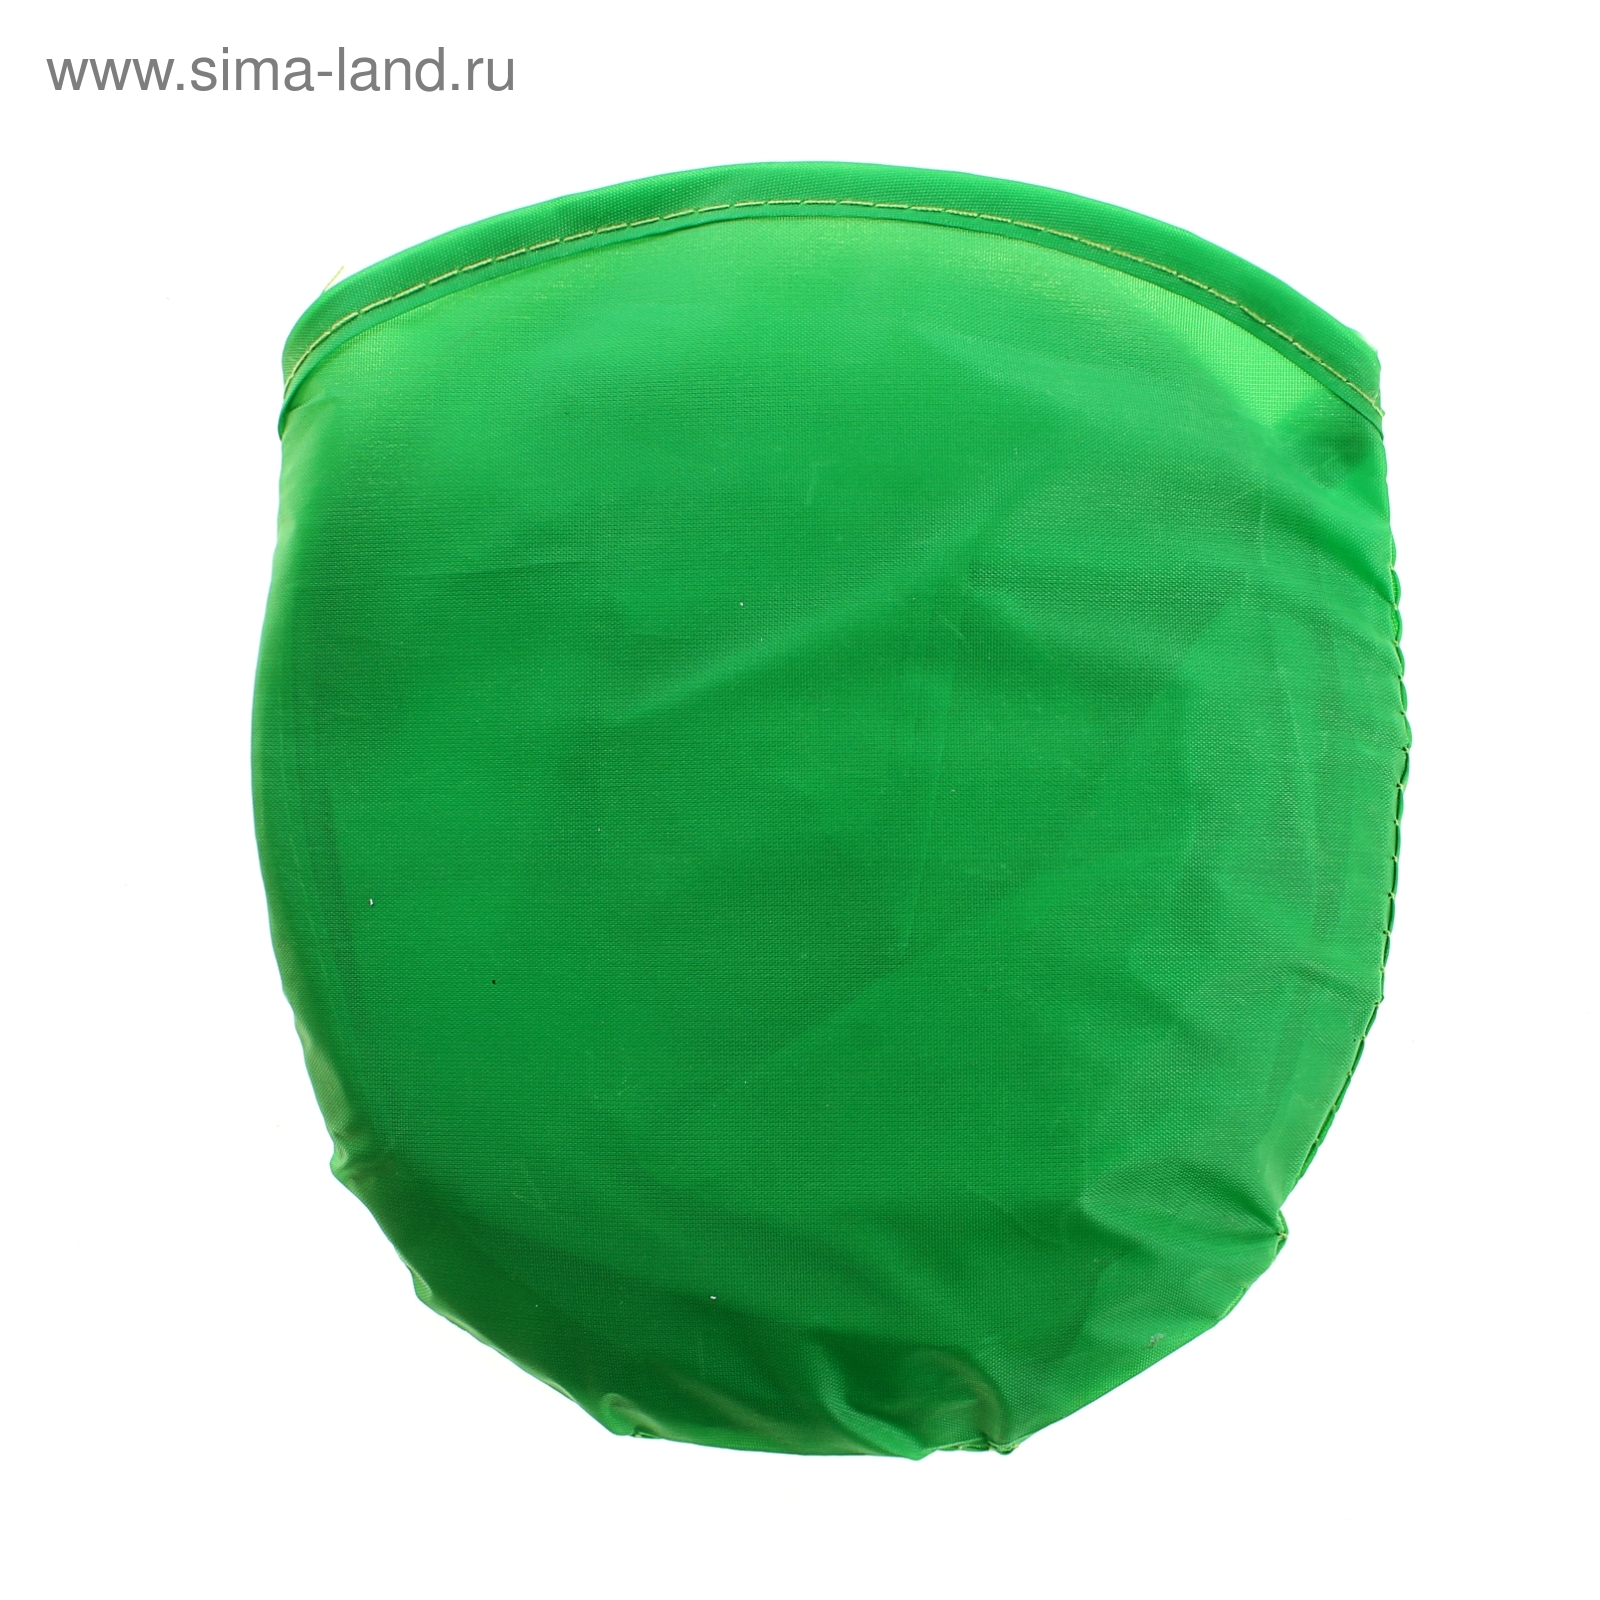 Шляпа складная в чехле, цвет зелёный, обхват головы 58 см, ширина полей 9 см